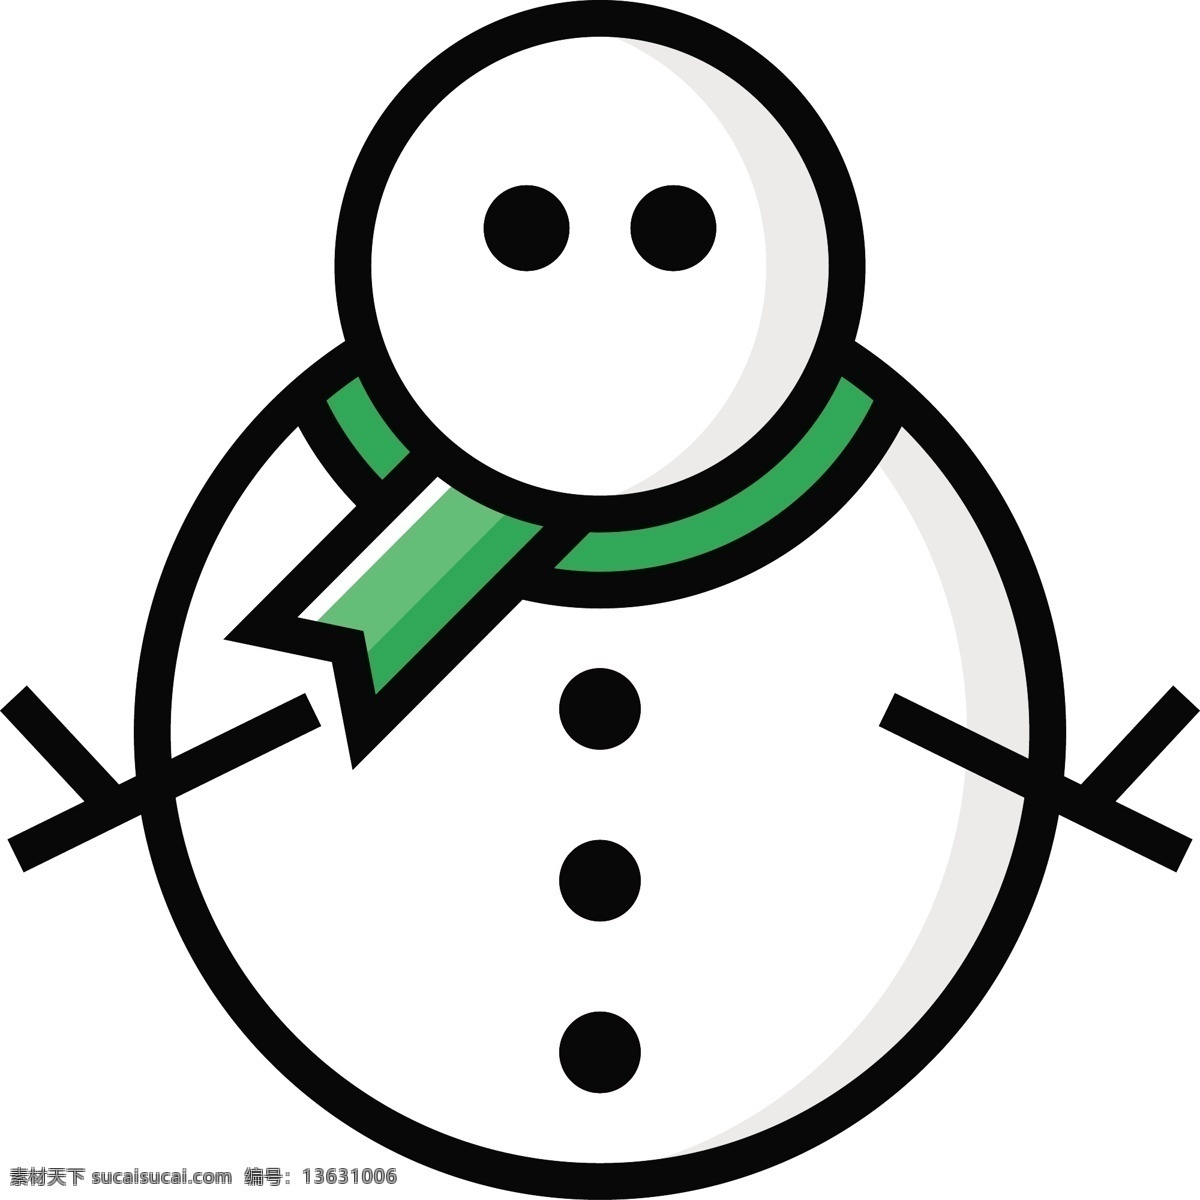 可爱 圣诞 icon 图标 填充 线性 扁平 手绘 单色 多色 简约 精美 圆润 方正 立体 人物 圣诞节 雪花 雪人